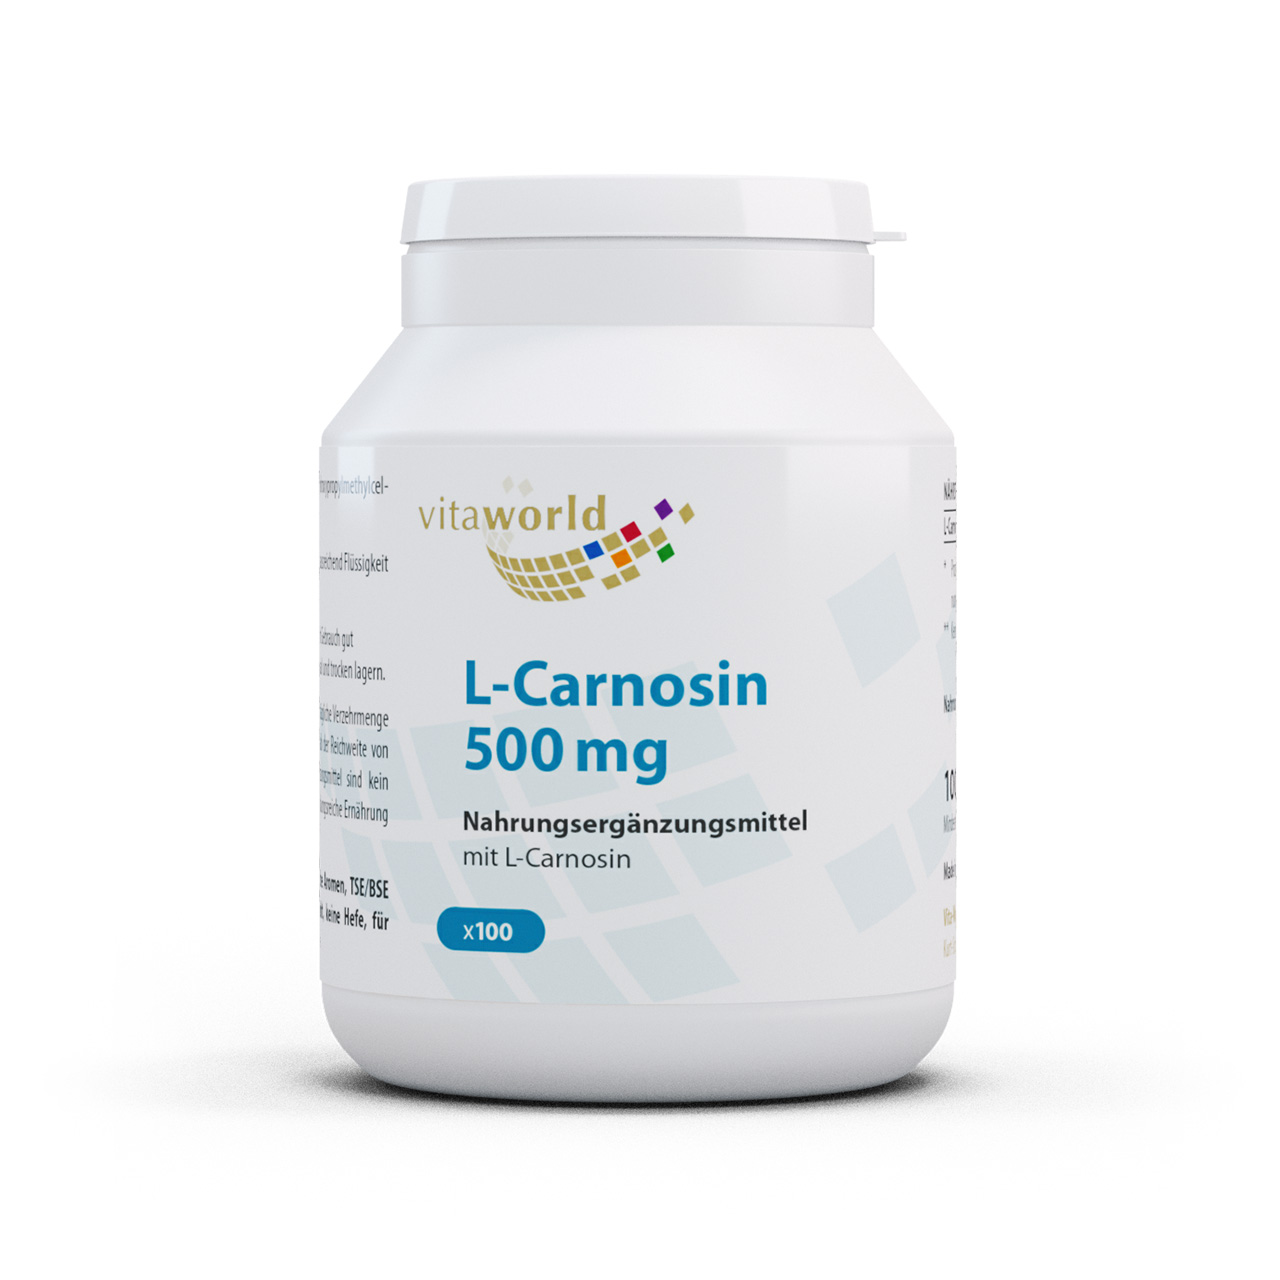 Vita World L-Carnosin 500 mg | 100 Kapseln | Apotheken Herstellung | vegan | gluten- und laktosefrei